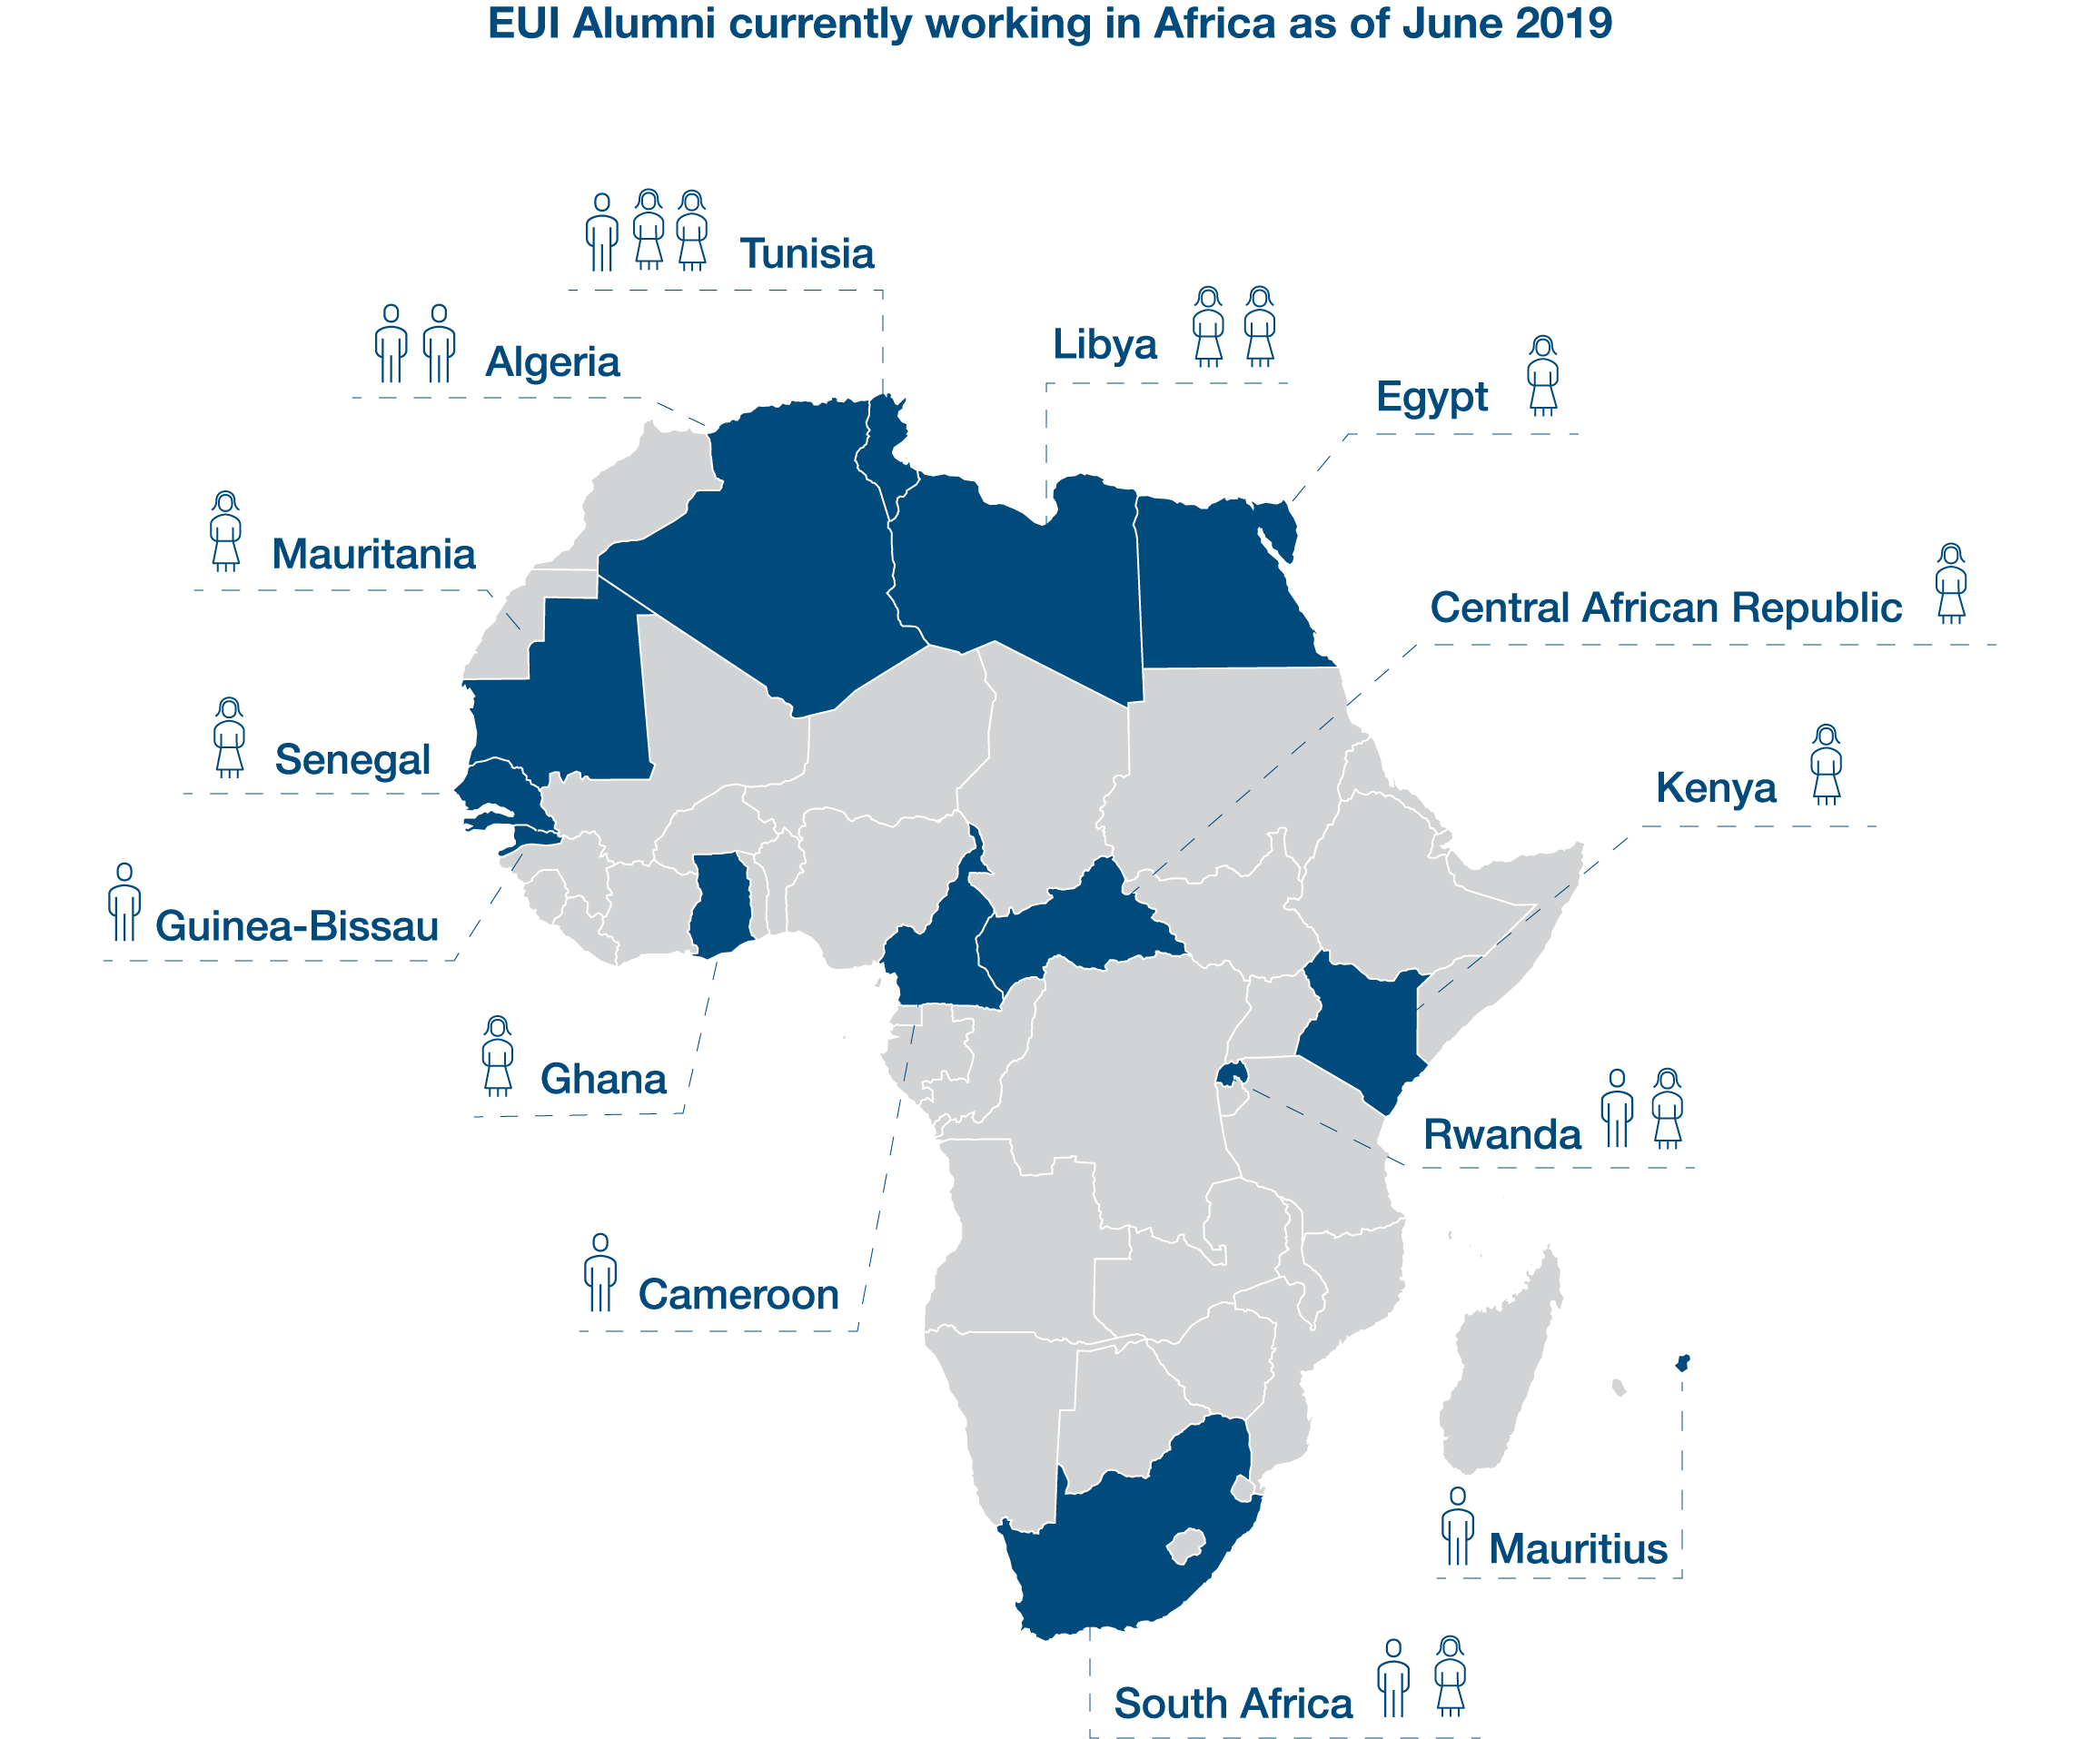 Chart-Africa-EUI Alumni Working in Africa (June 2019)